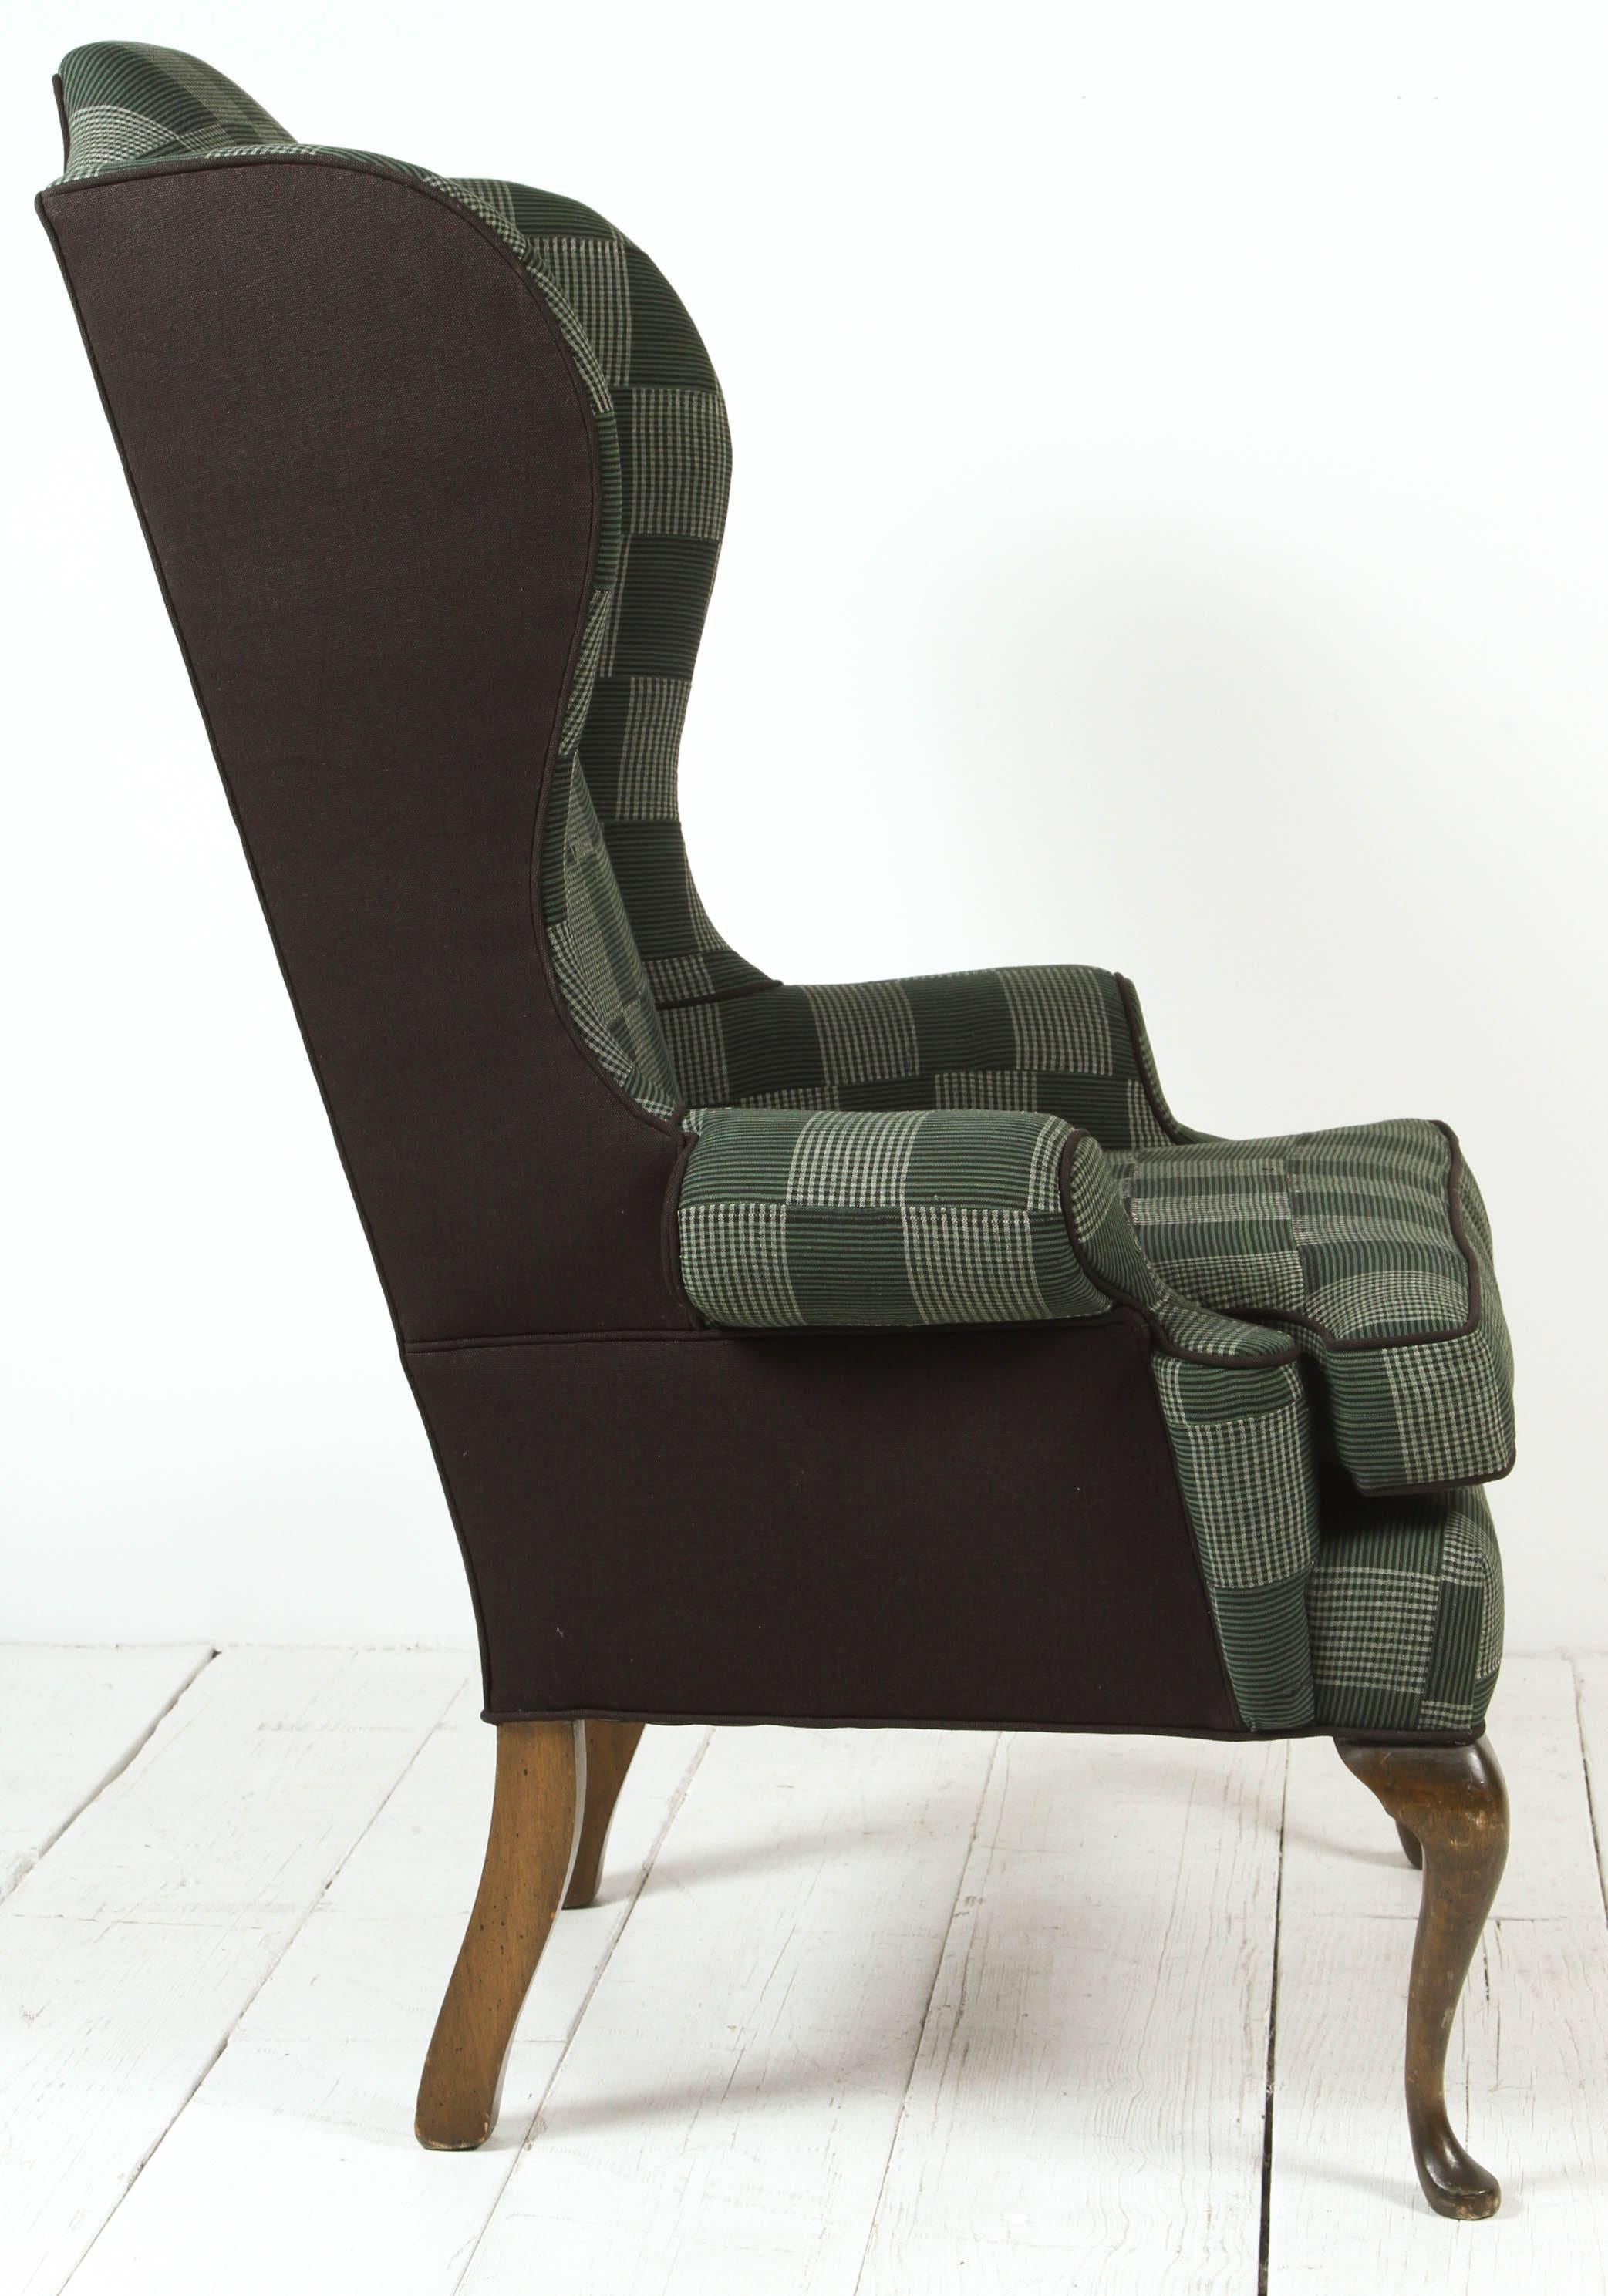 green plaid chair